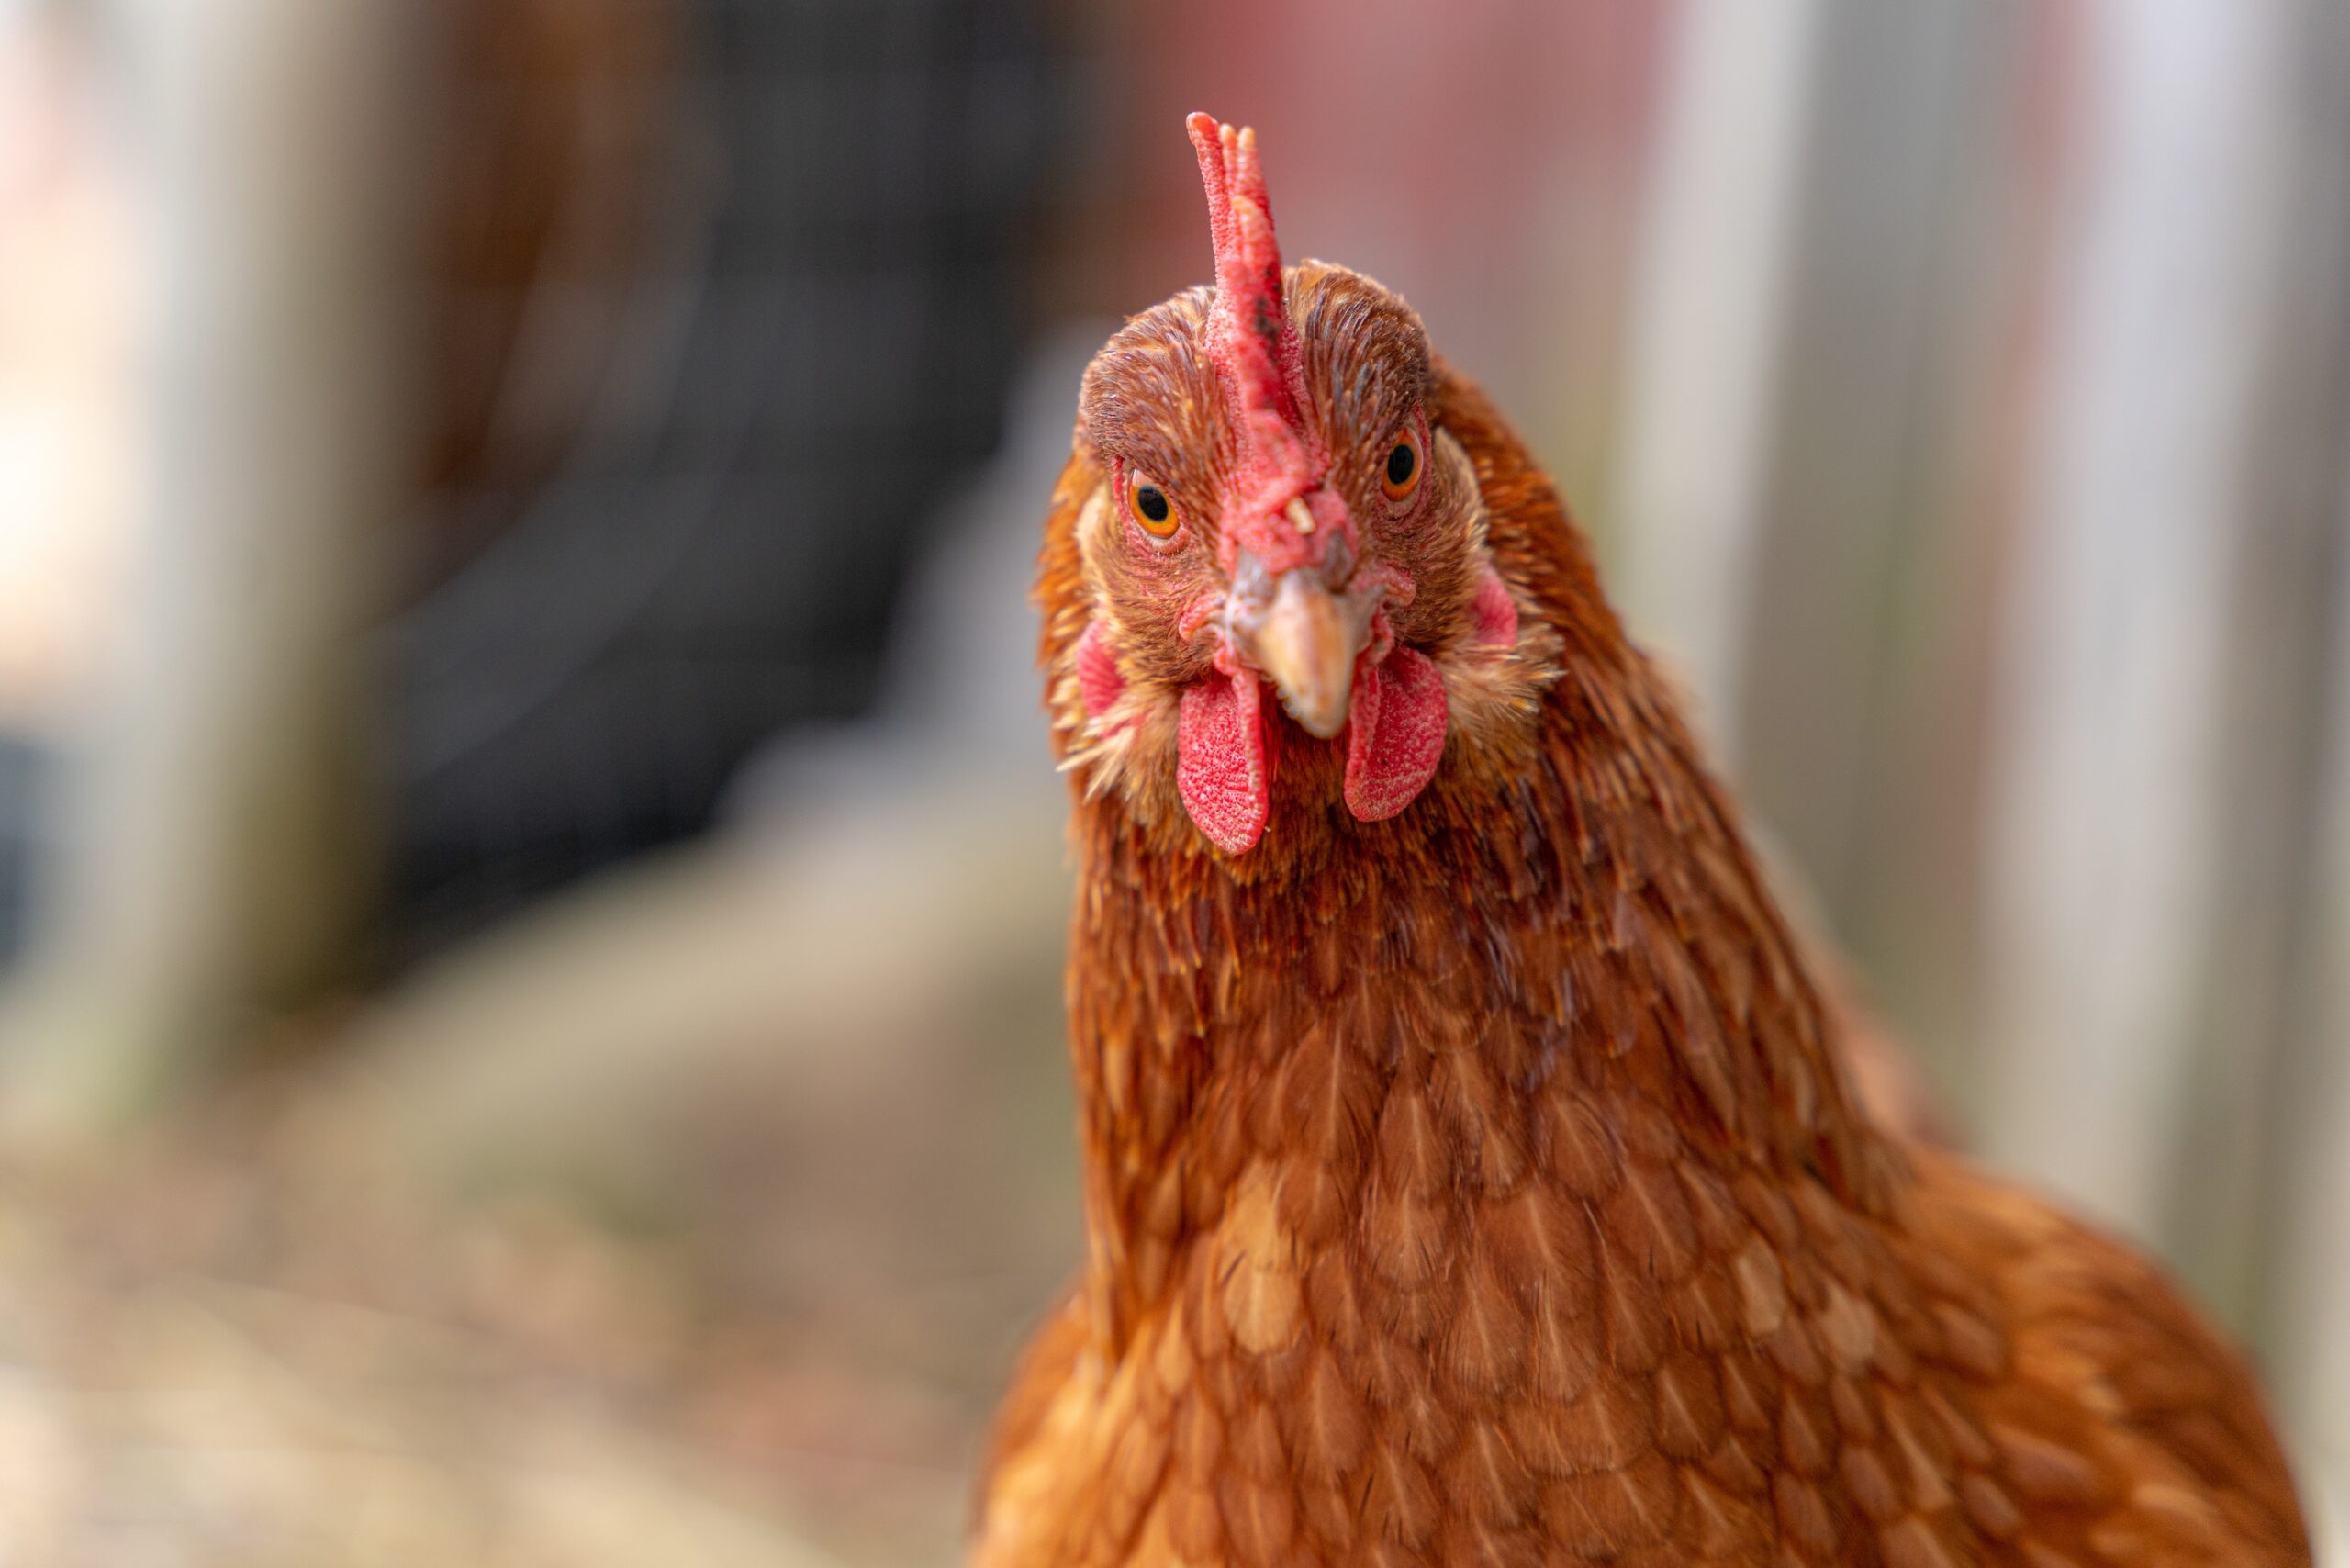 WHO alarmiert: Vogelgrippe-H5N1 wird zur Gefahr für Menschen